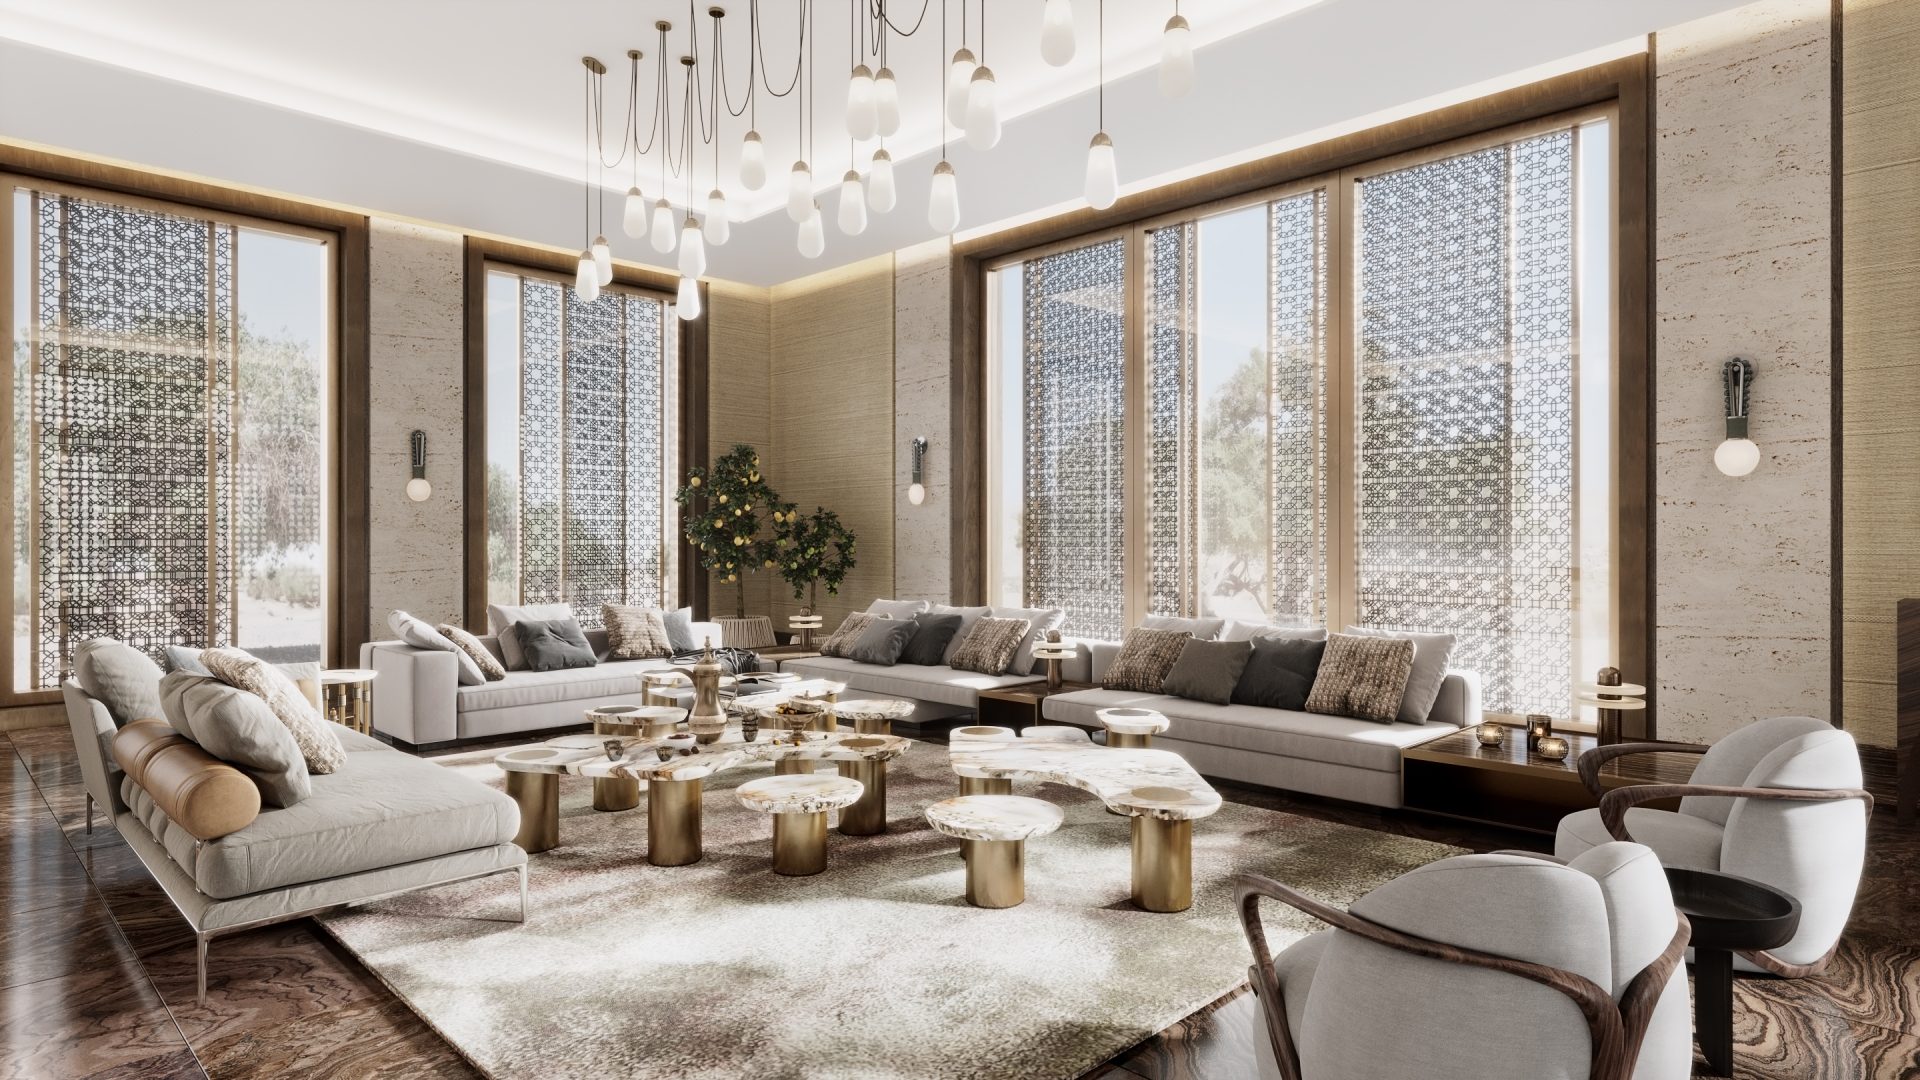 The Designer Studio Defines Quality Interior Design in Qatar Luxury